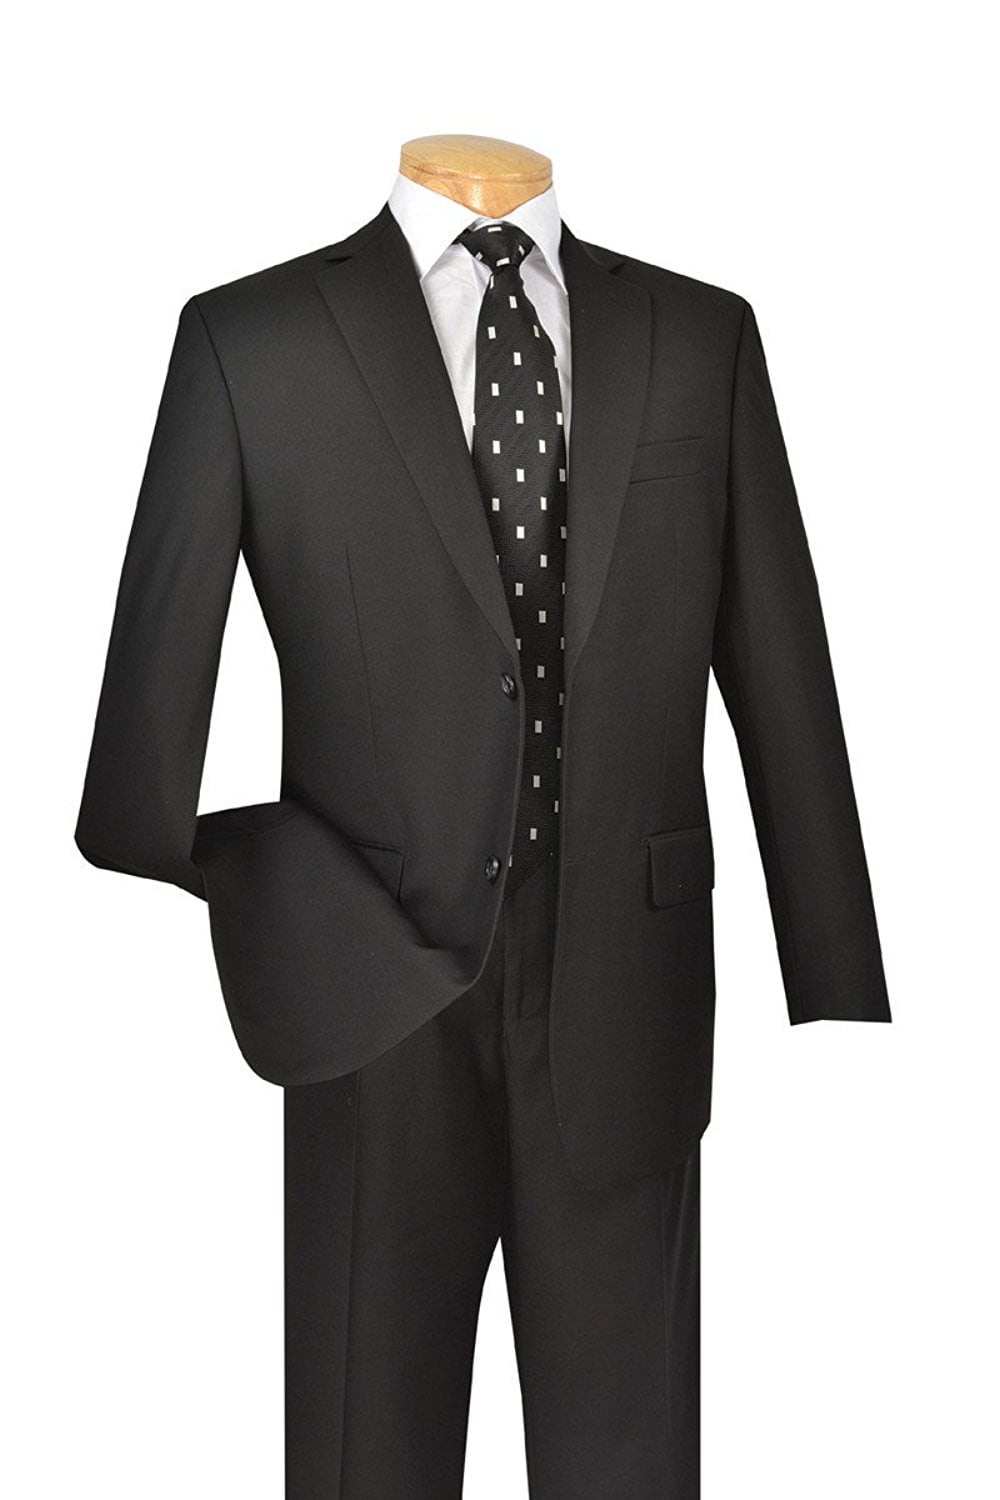 Men's Executive Two Piece Suit - Walmart.com